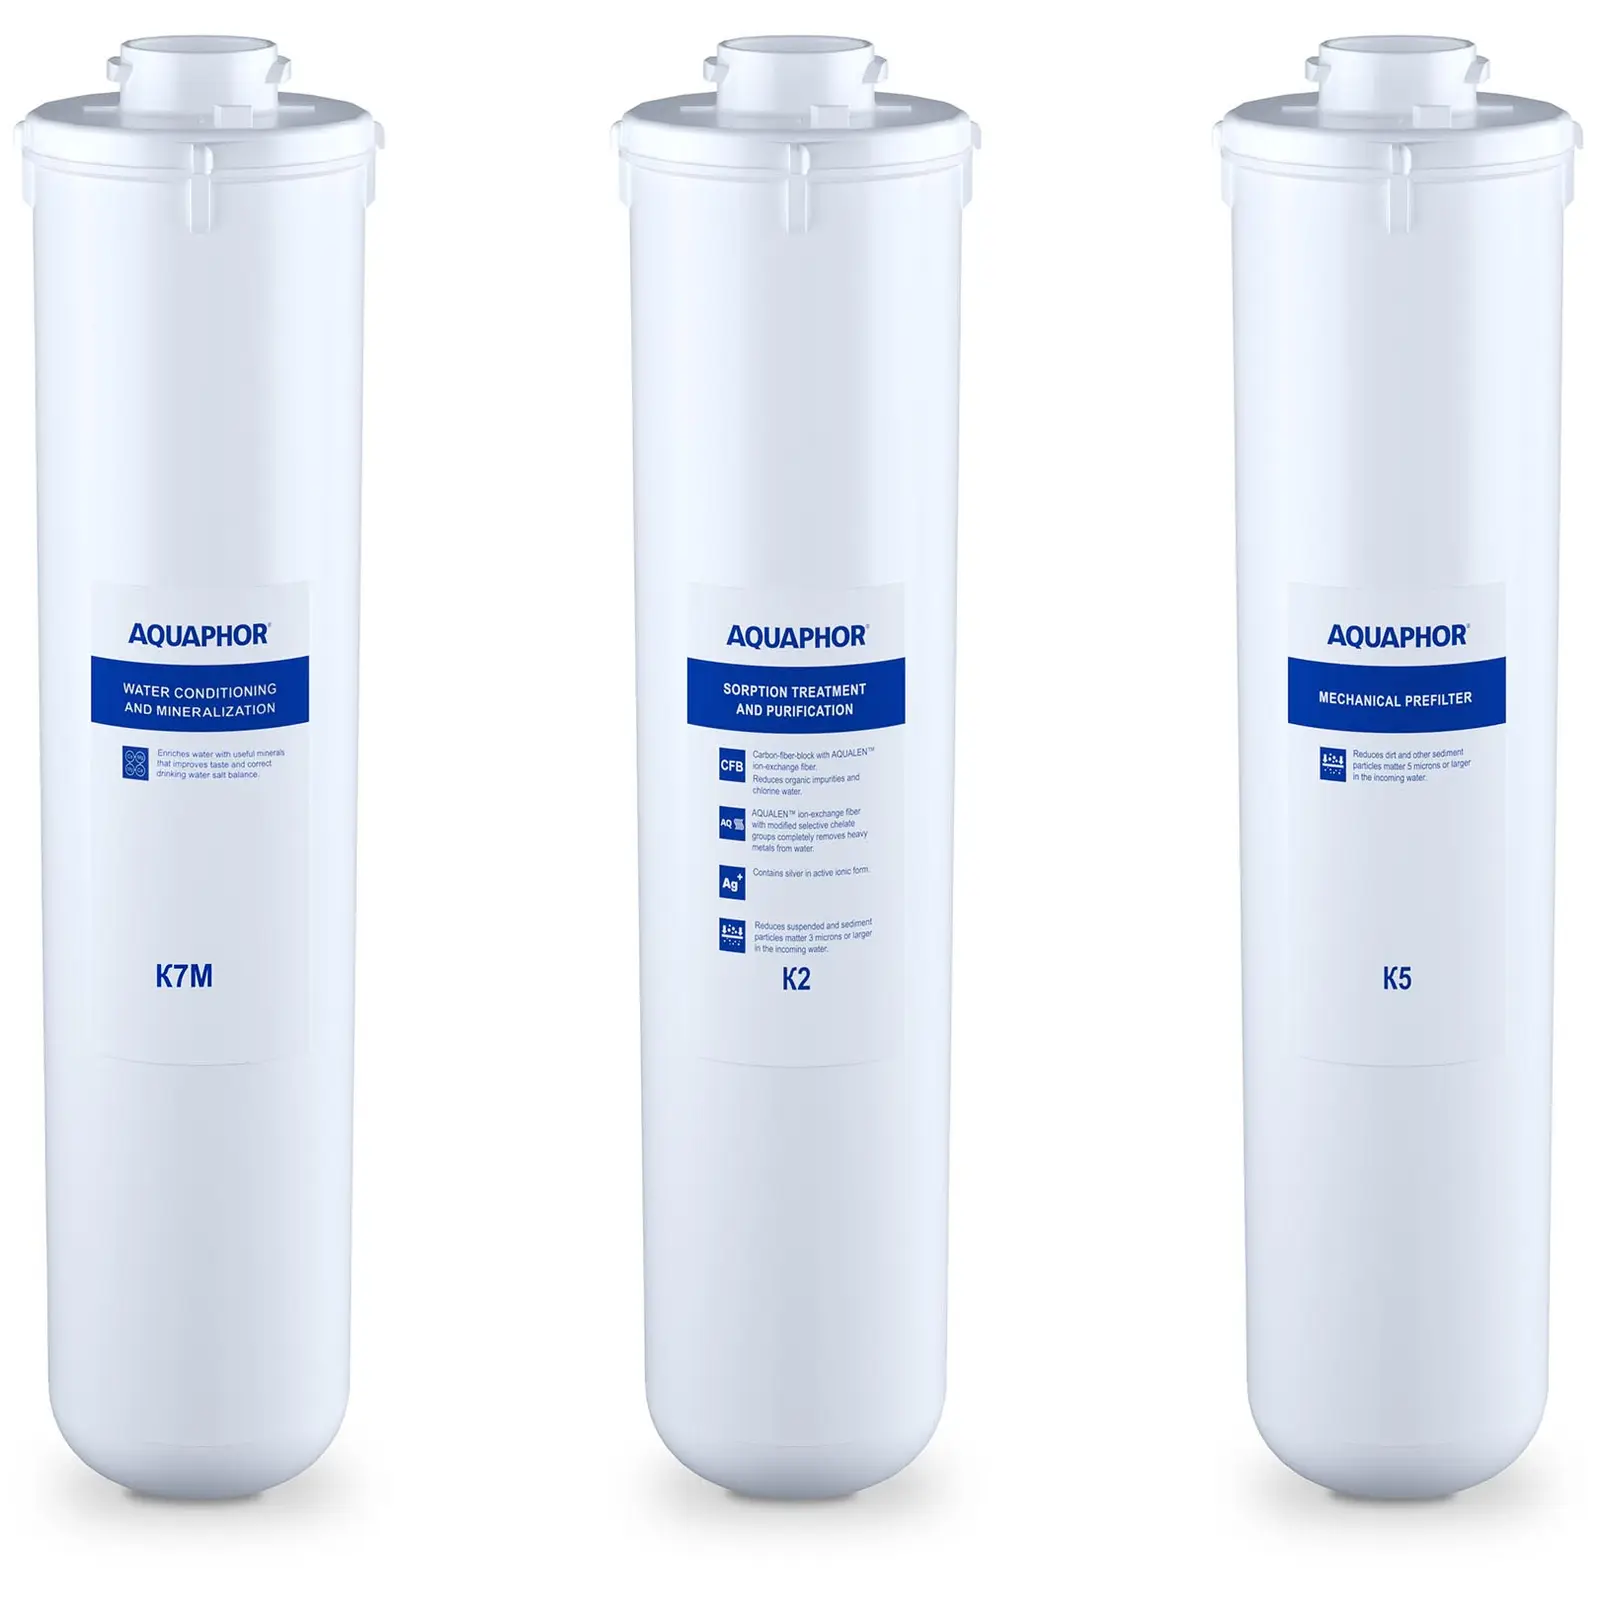 Aquaphor vannfilter for omvendt osmose - tilbehør til Aquaphor omvendt osmose sett K2 + K5 + K7M